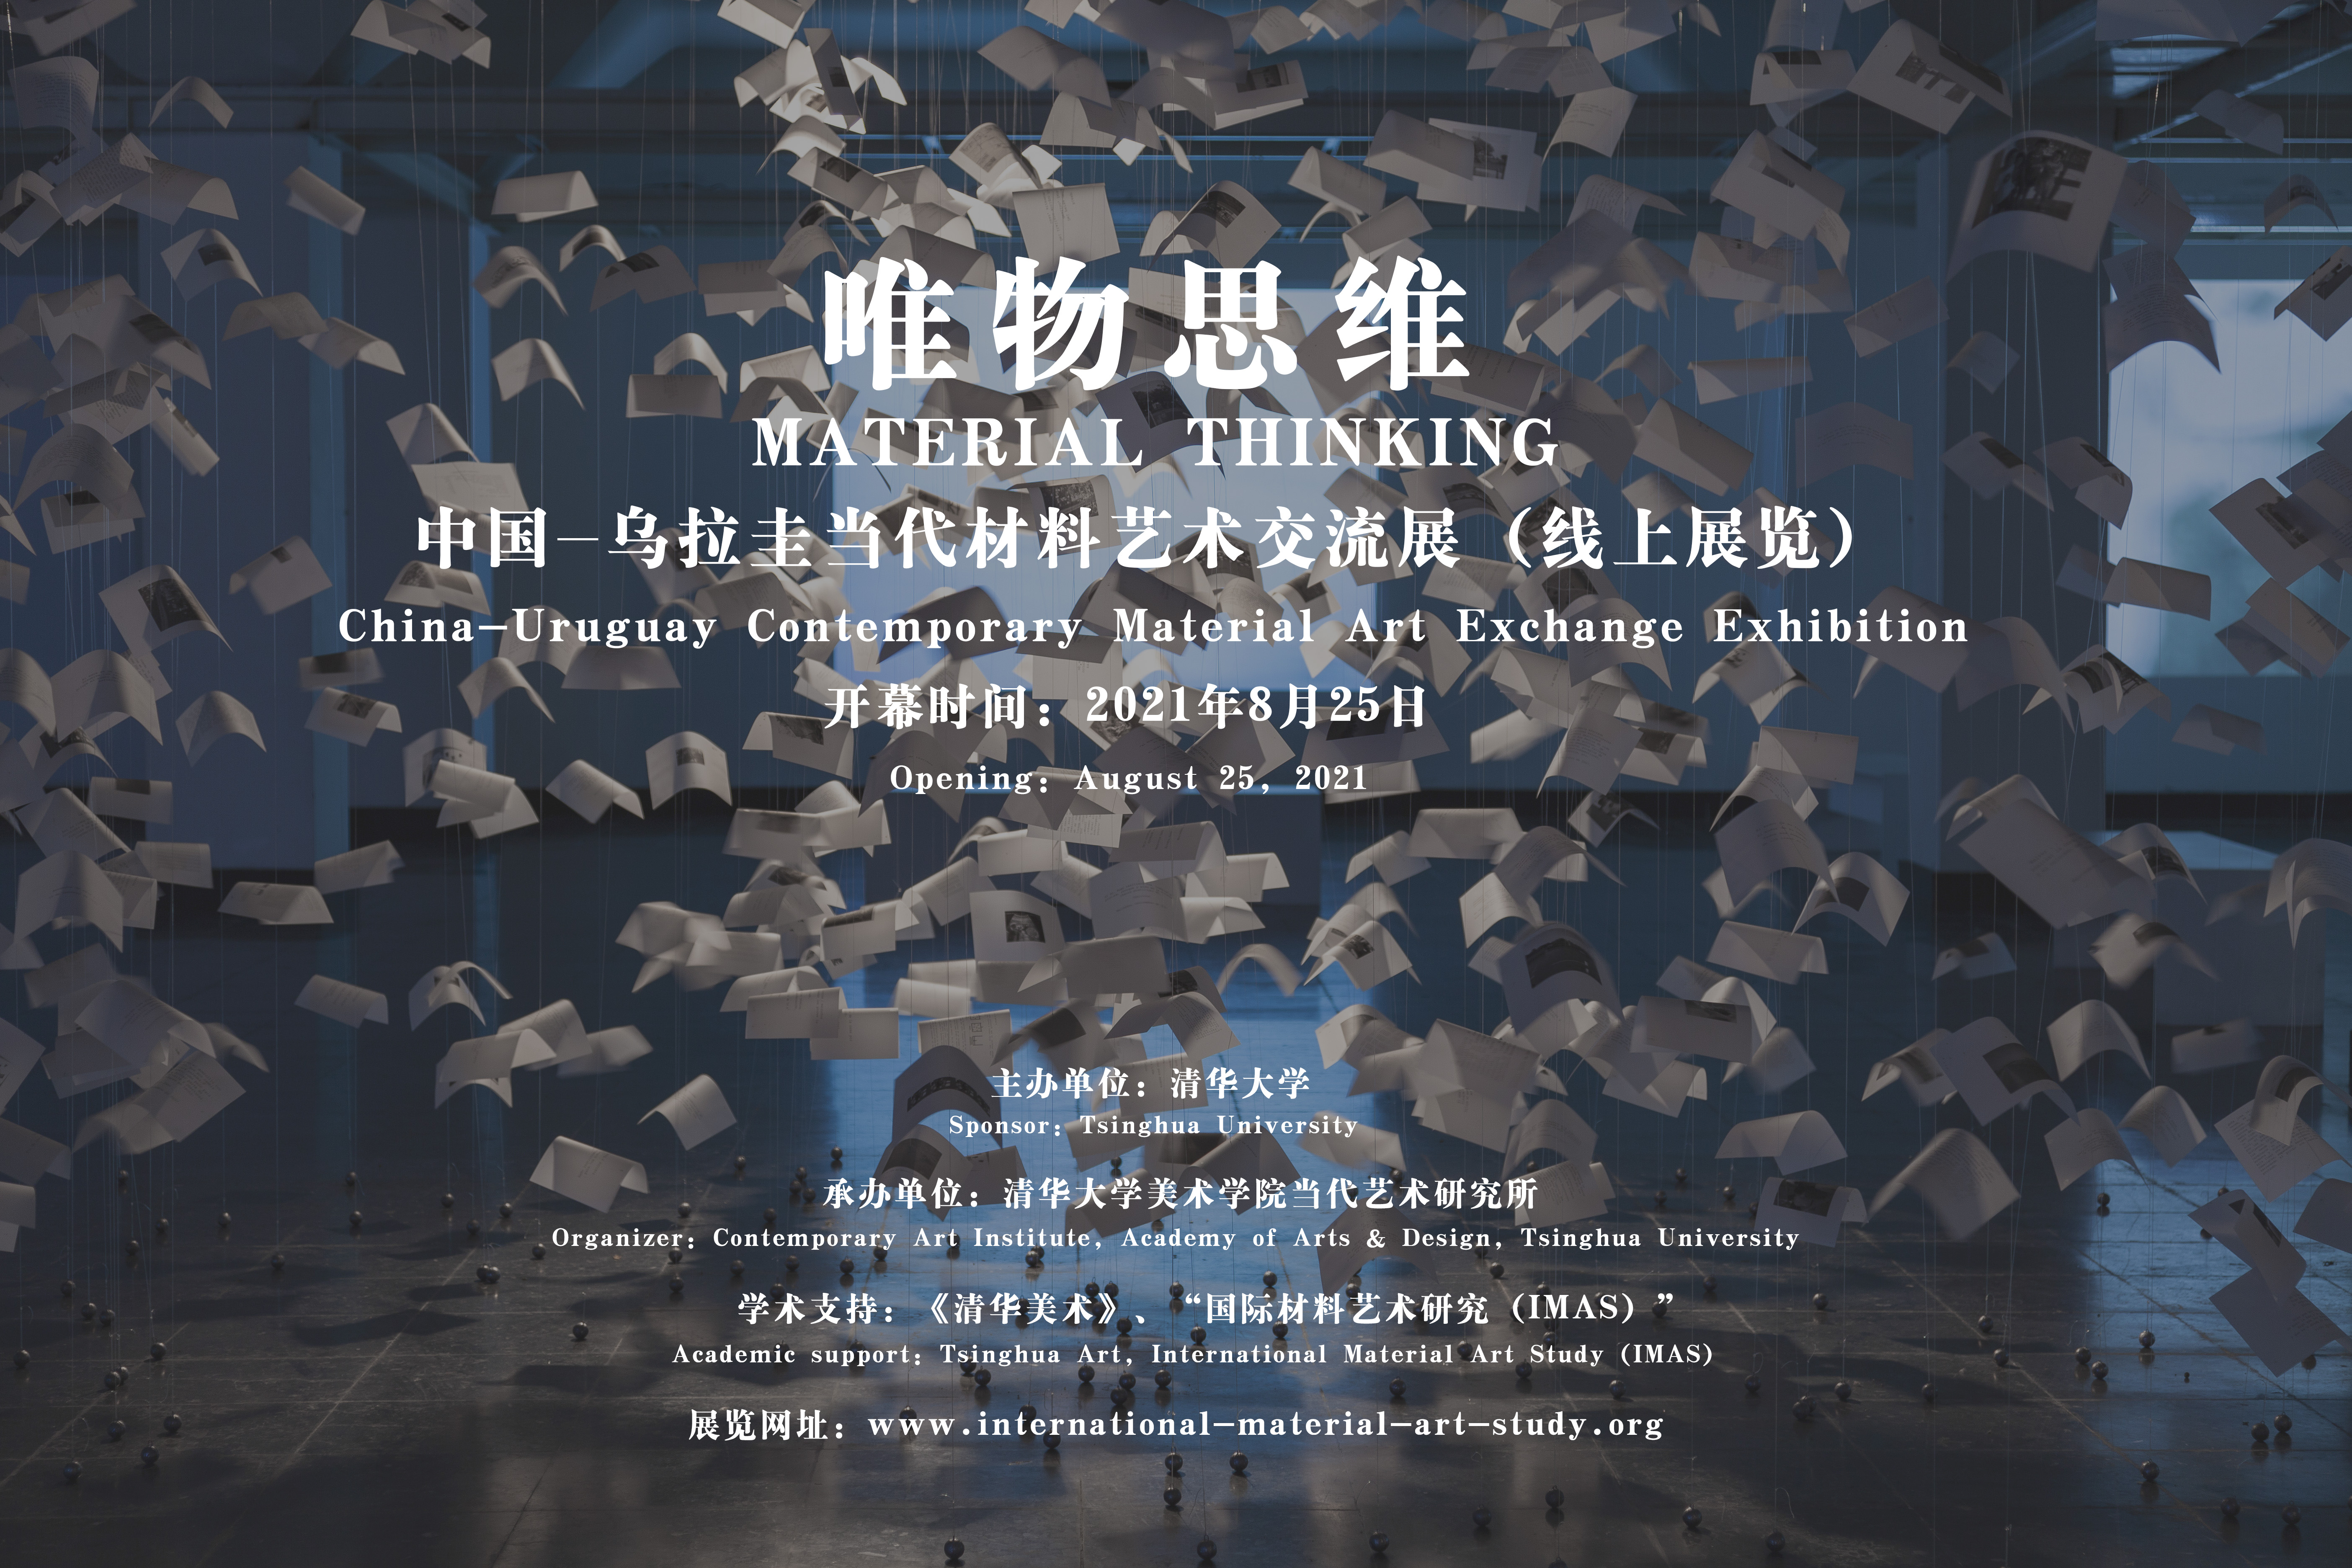 20210825-中国-乌拉圭当代材料艺术交流展-视频会议截屏-展览海报.jpeg